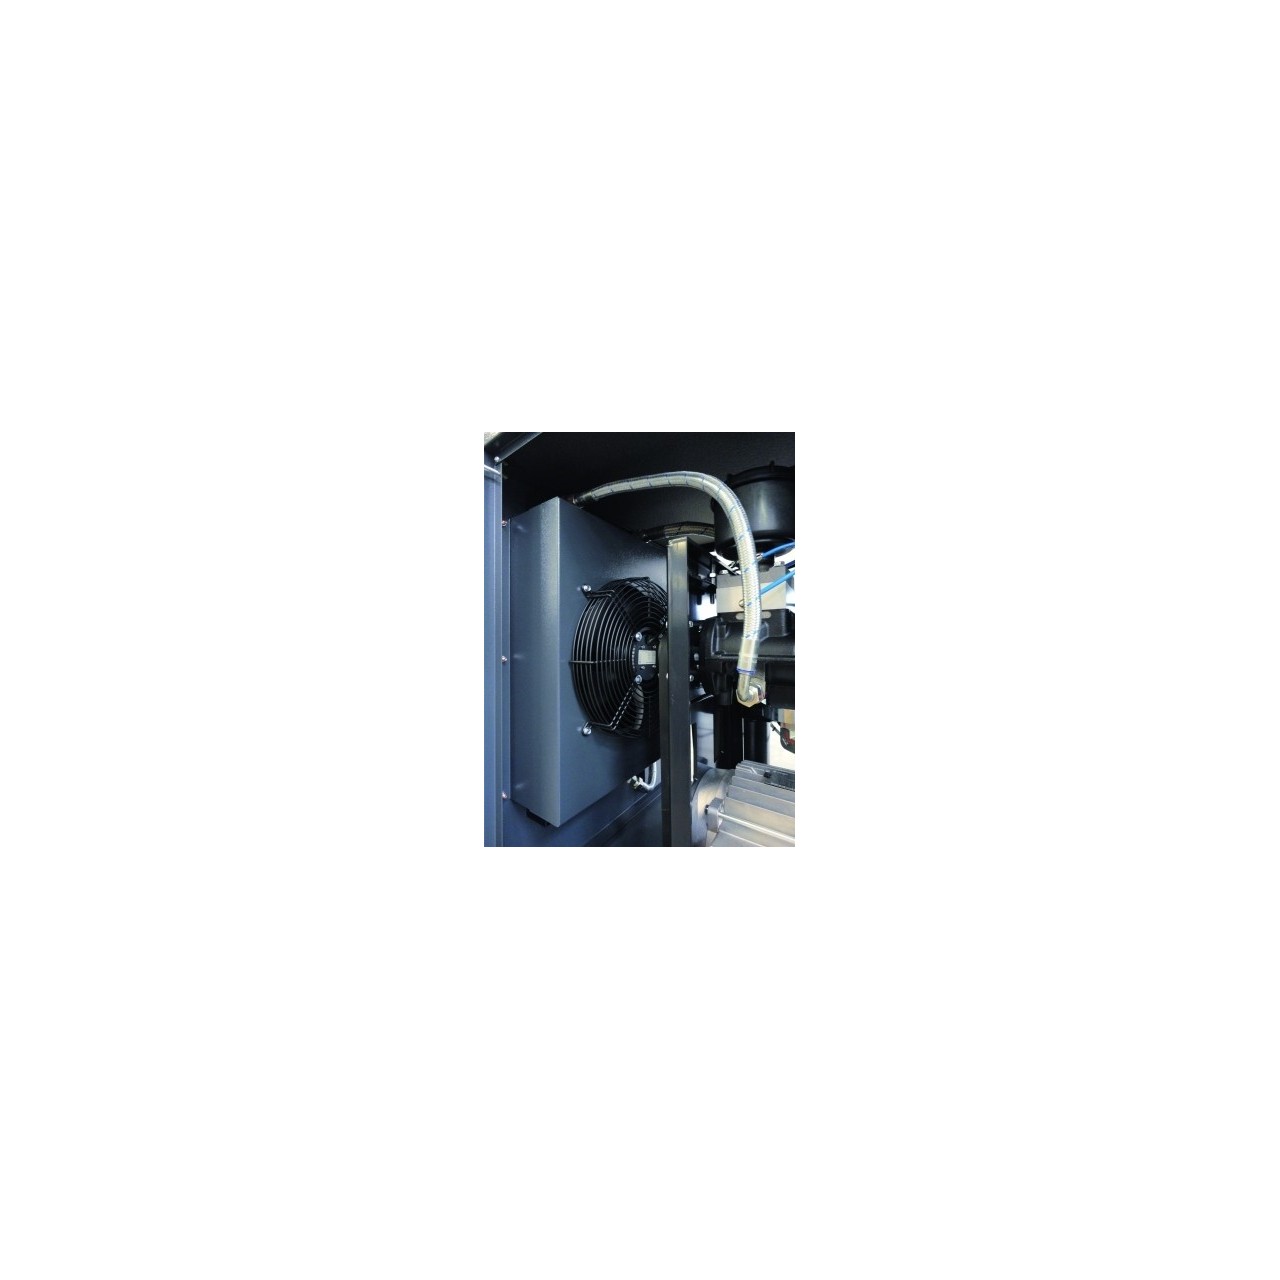 Compresor de tornillo Nuair Sirio 20cv 500L